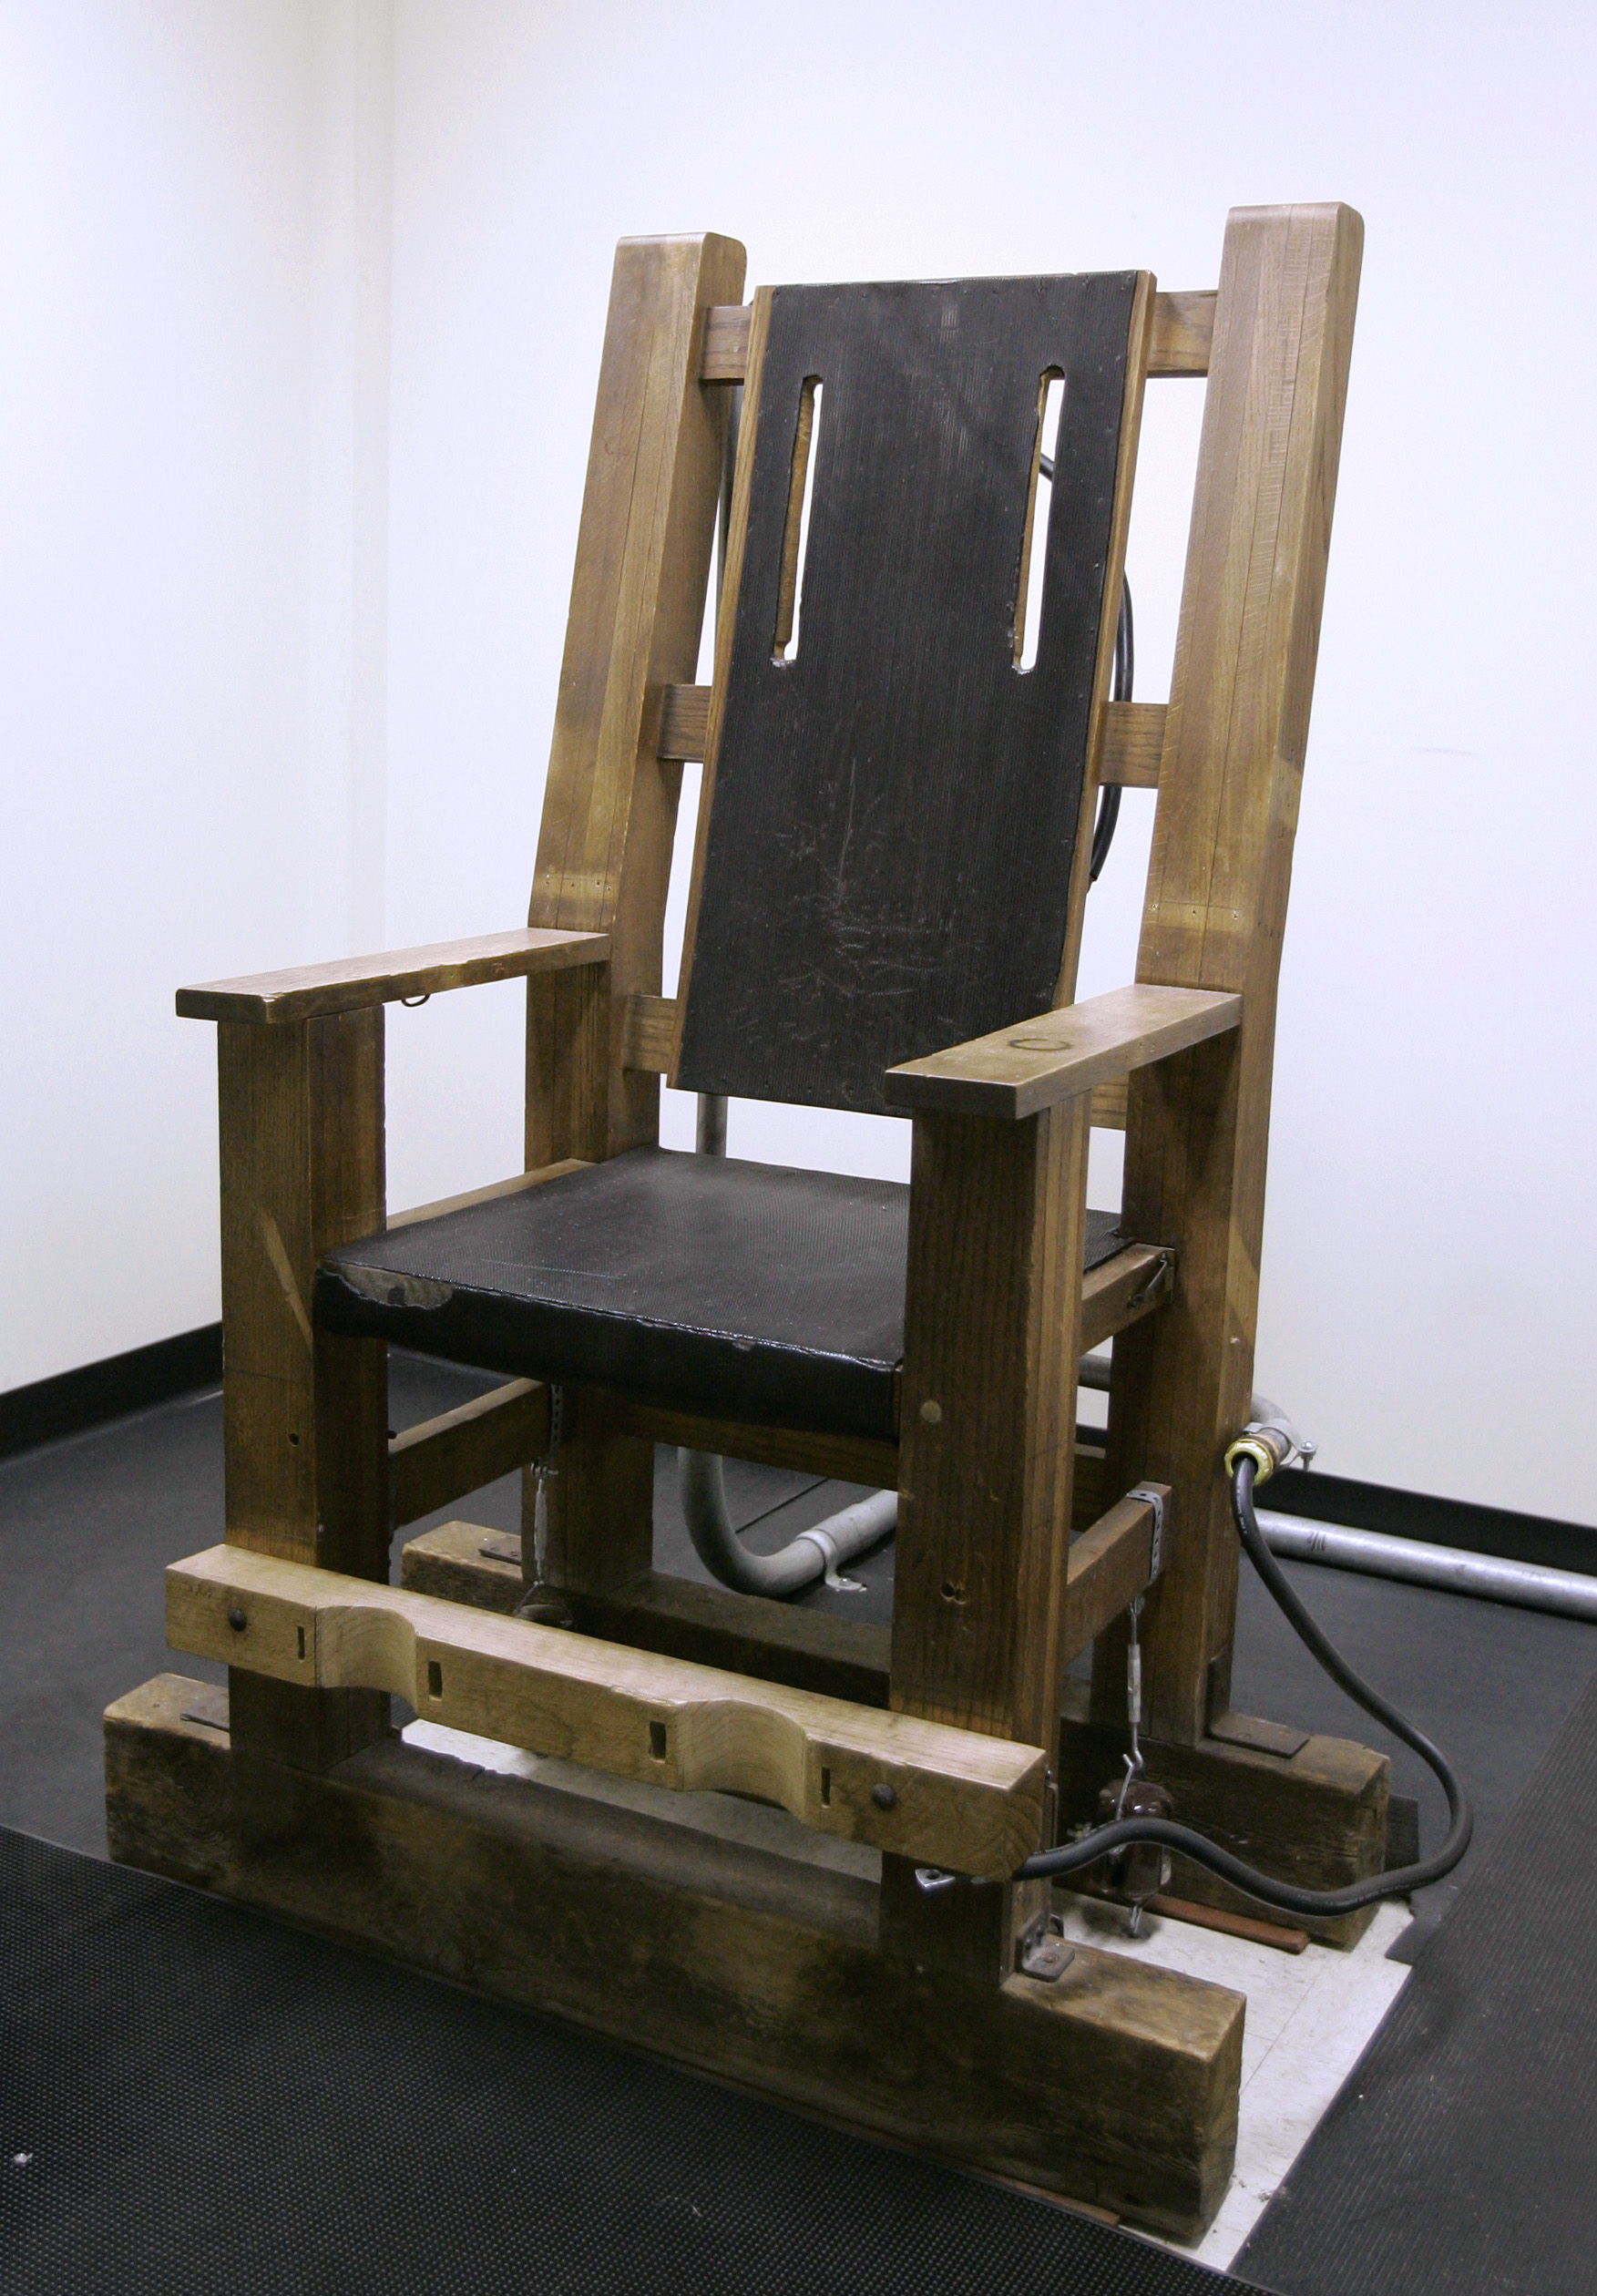 Elektriska stolen, fotograferad i Nebraska år 2007.